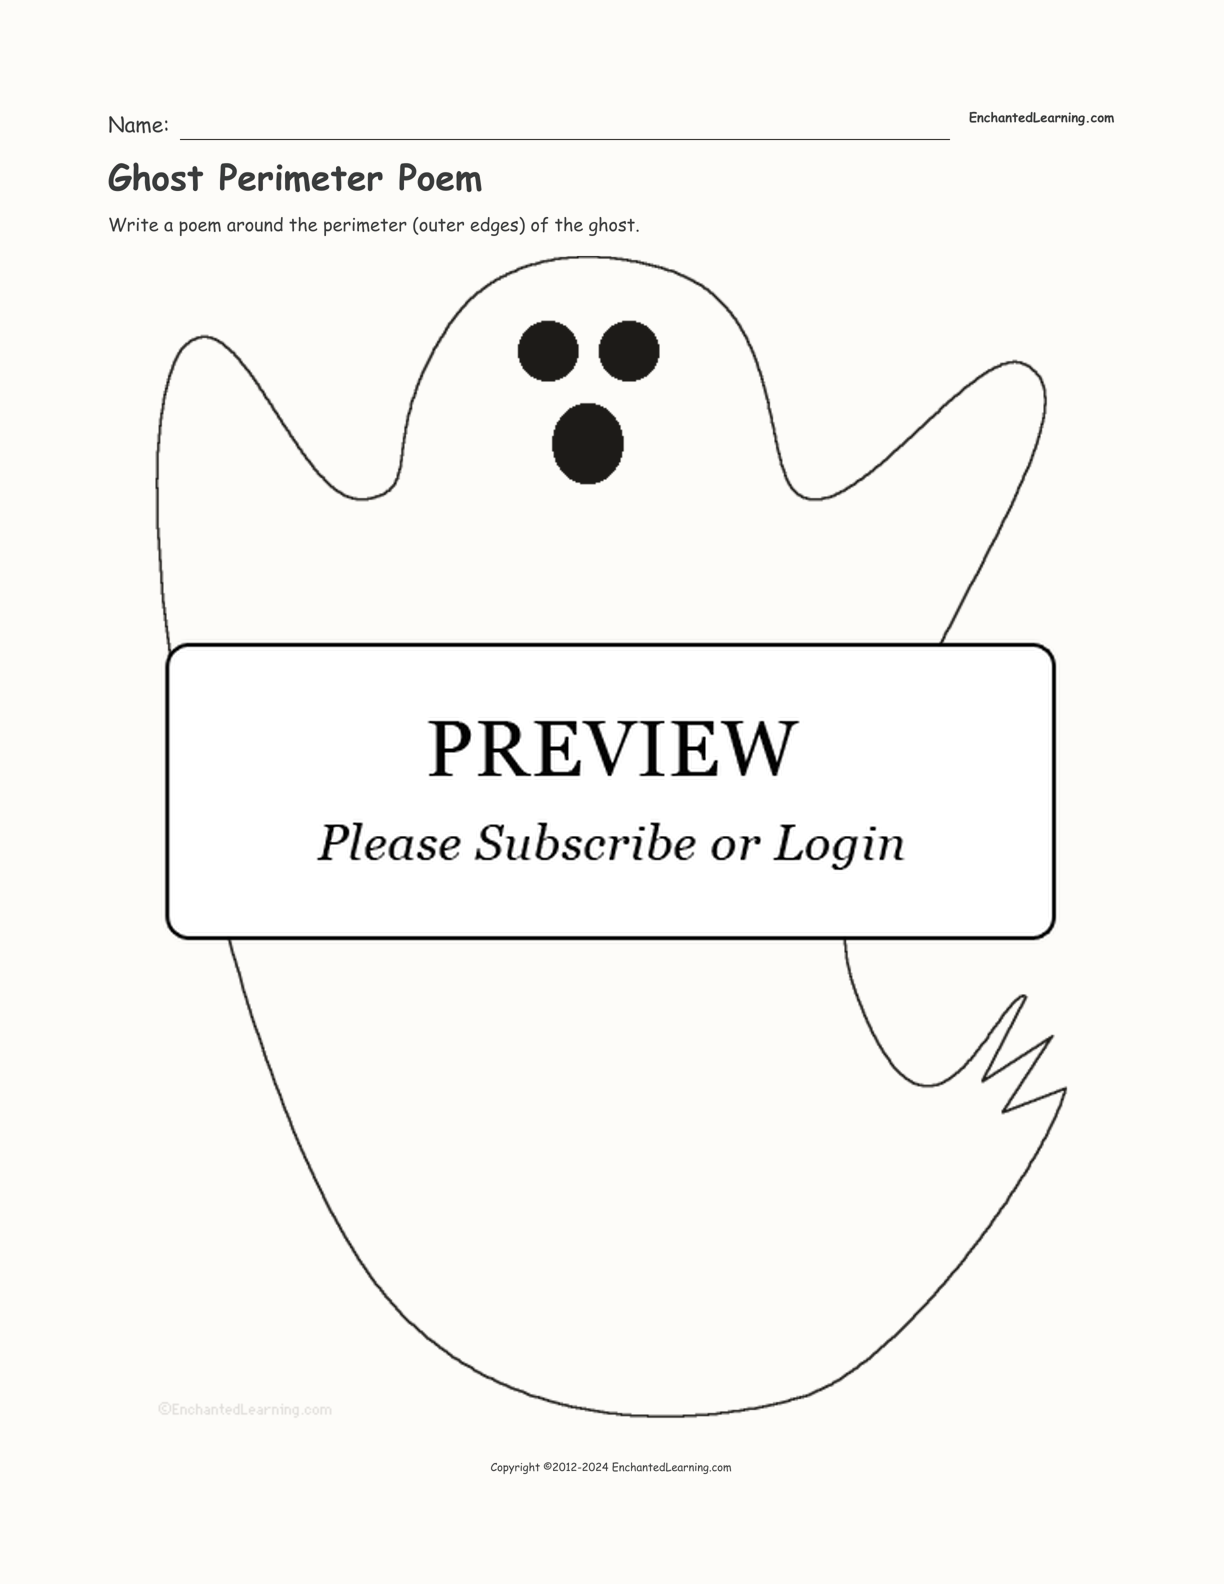 Ghost Perimeter Poem interactive worksheet page 1